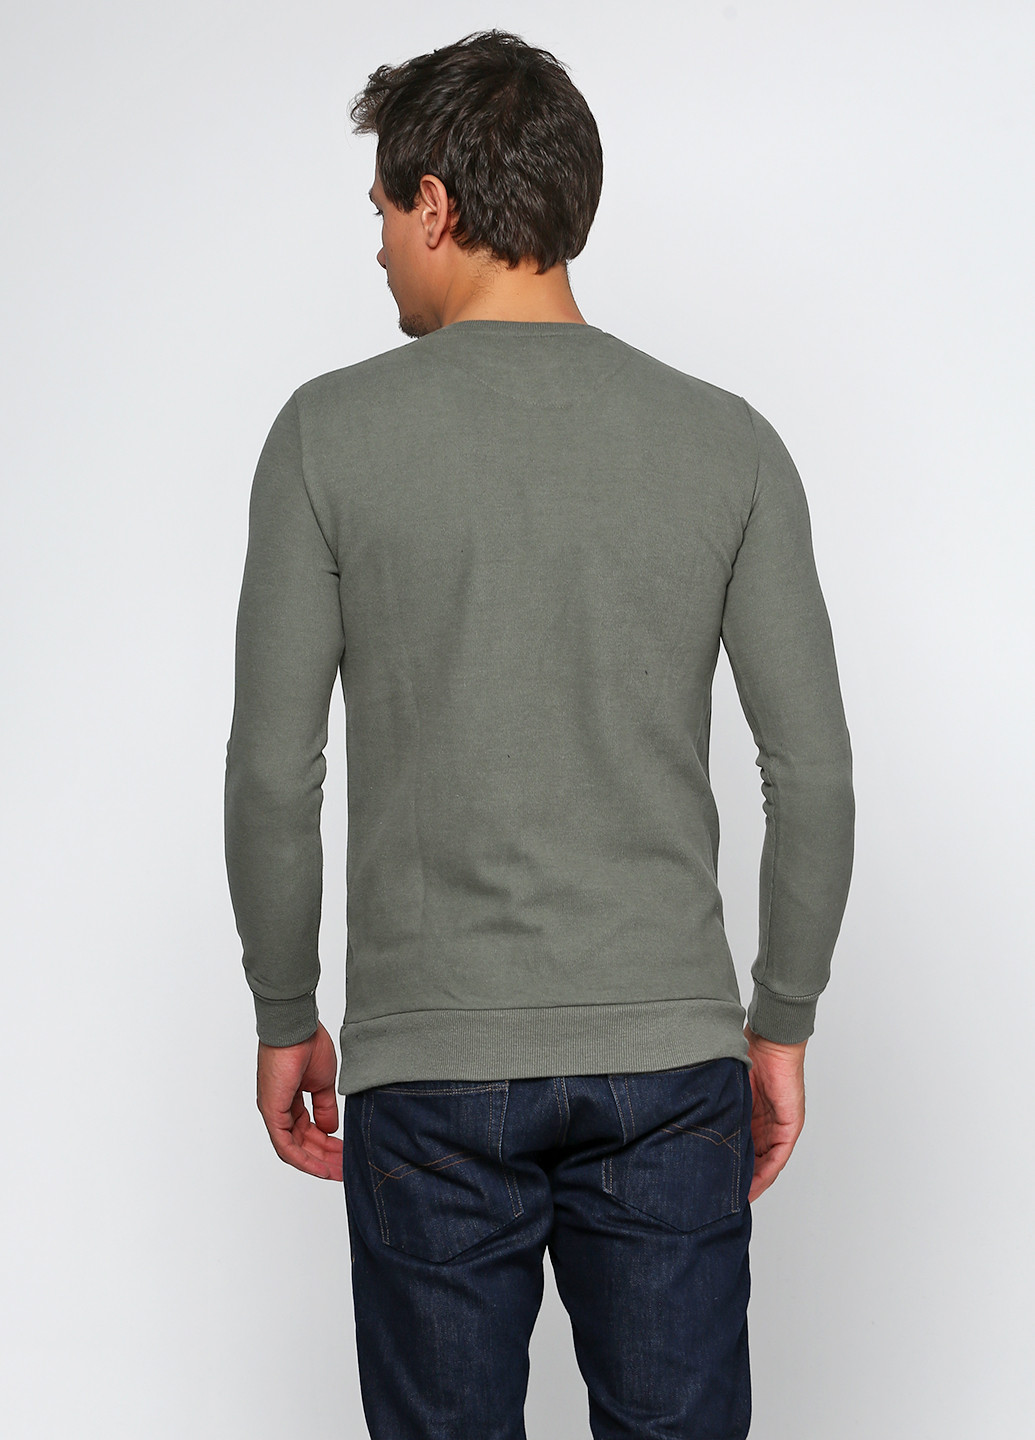 Оливковий демісезонний пуловер пуловер DKM